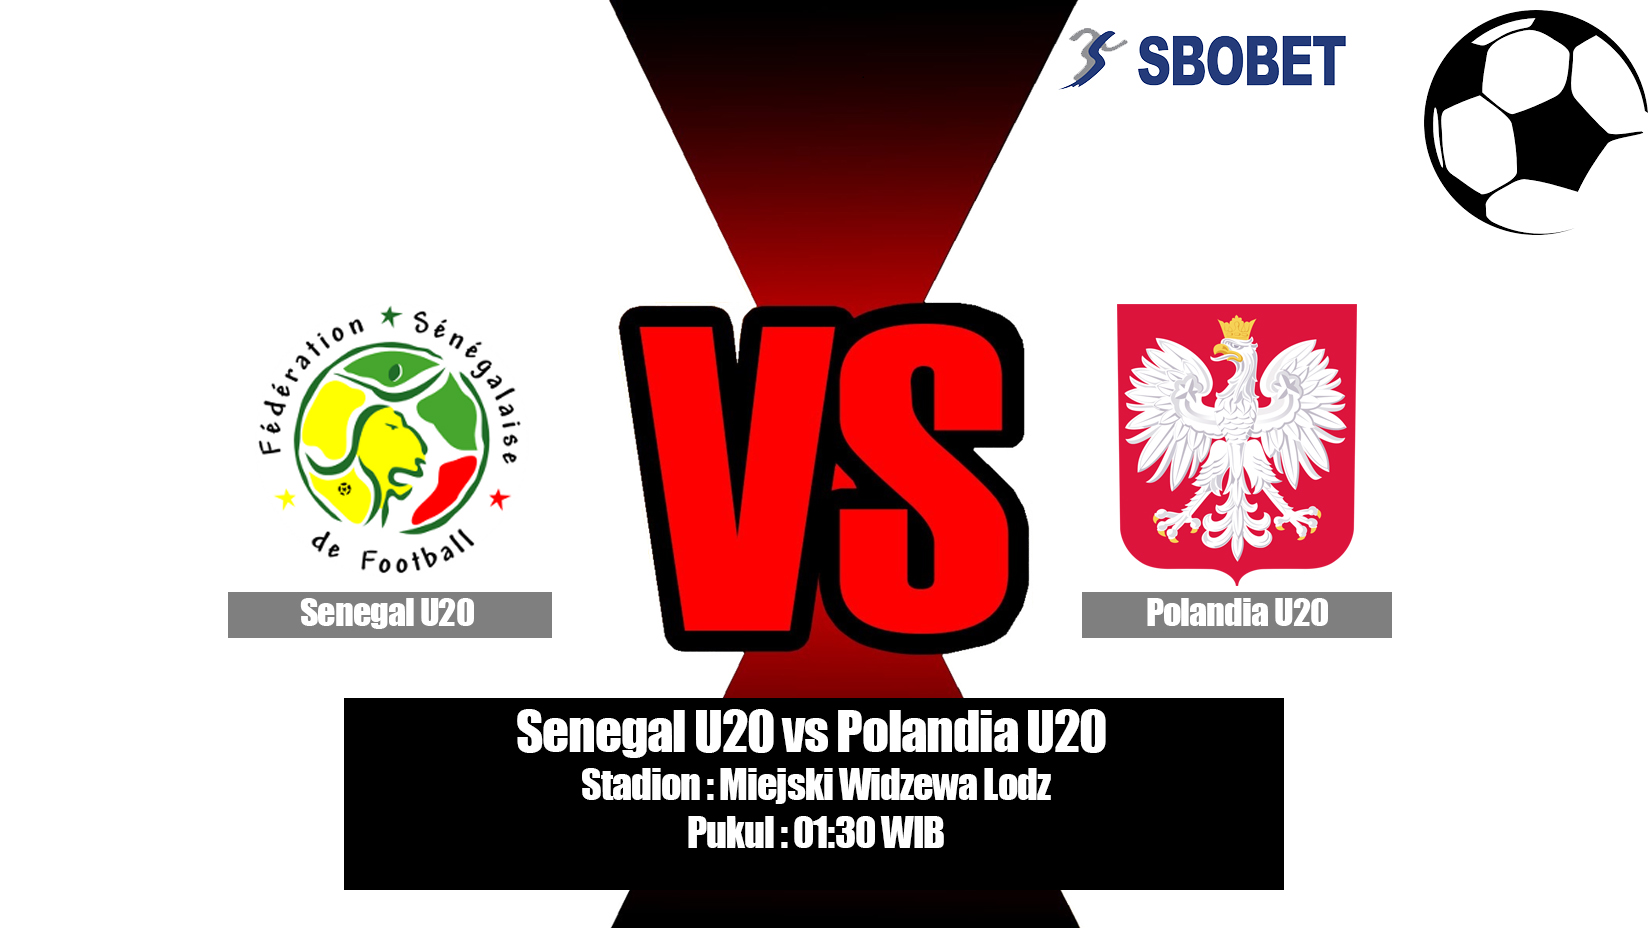 Prediksi Bola Senegal U20 vs Polandia U20 30 Mei 2019